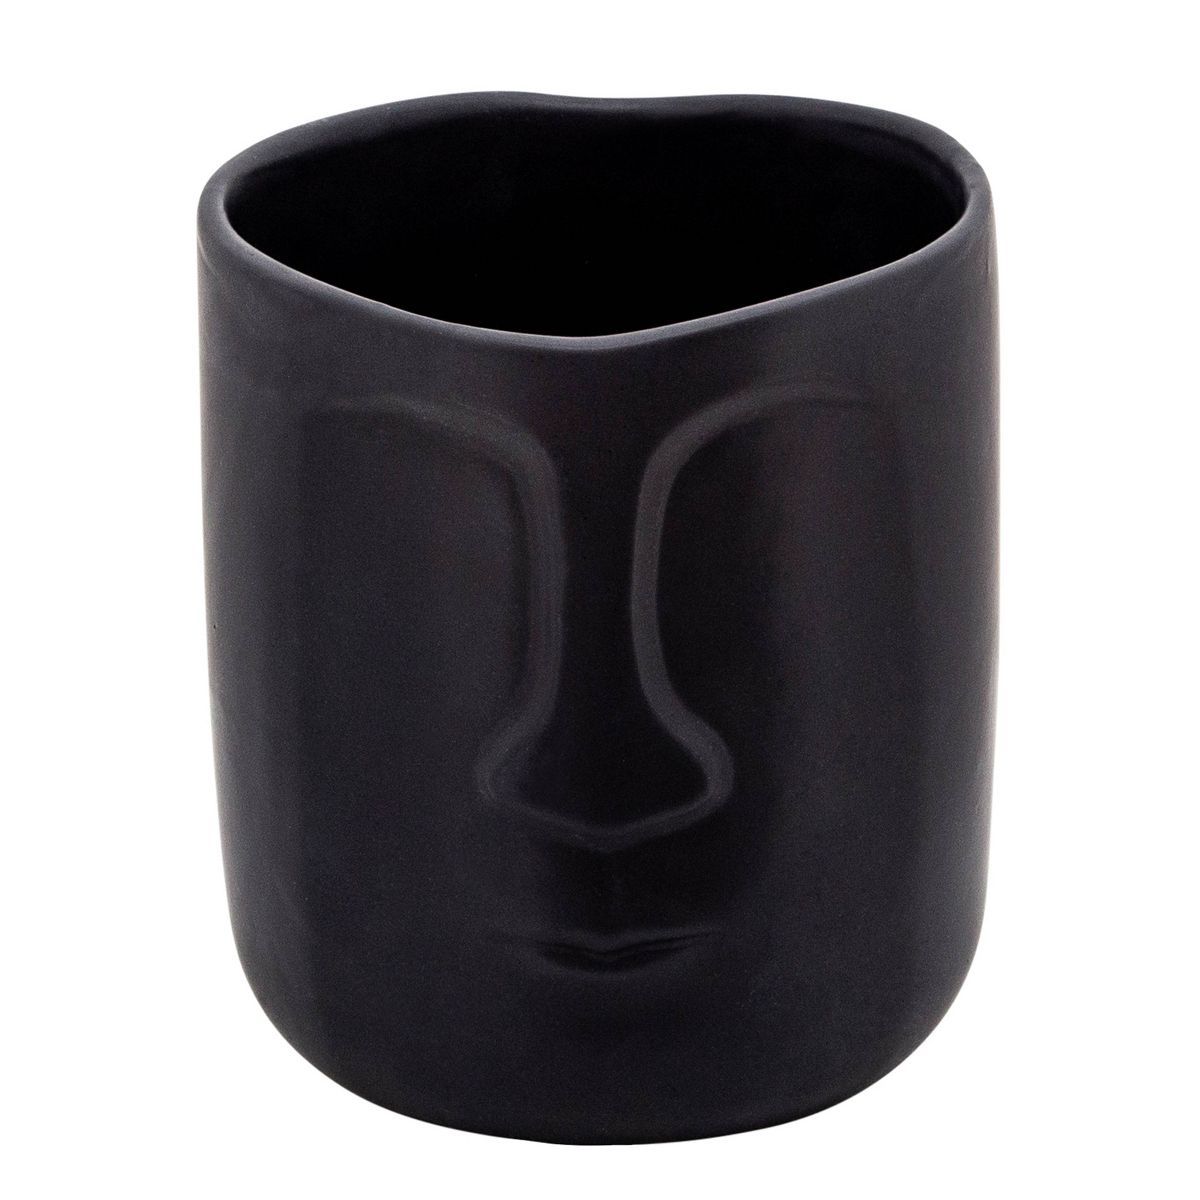 Sagebrook Home 6" Wide Face Ceramic Planter Pot Black | Target